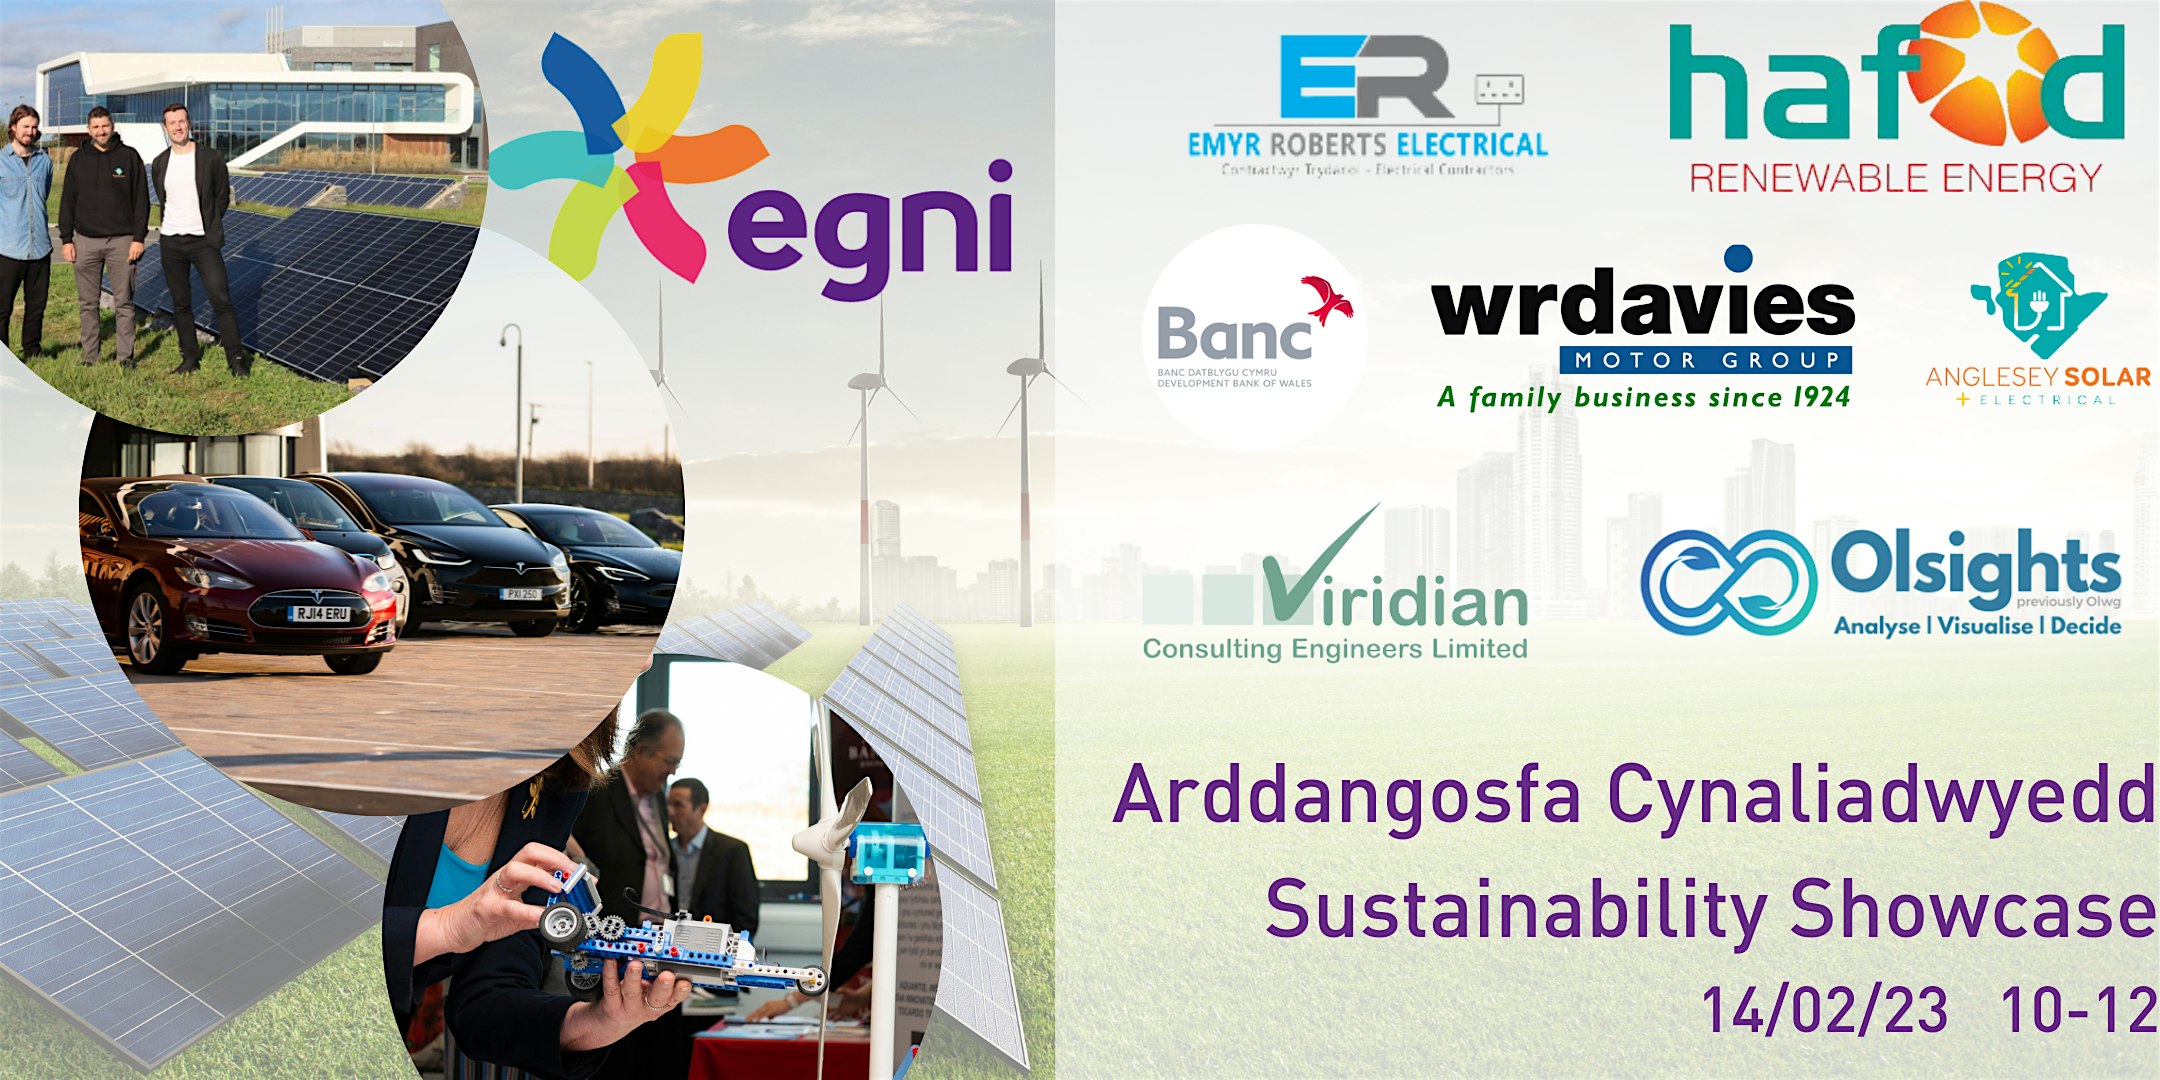 Arddangosfa Cynaliadwyedd // Sustainability Showcase